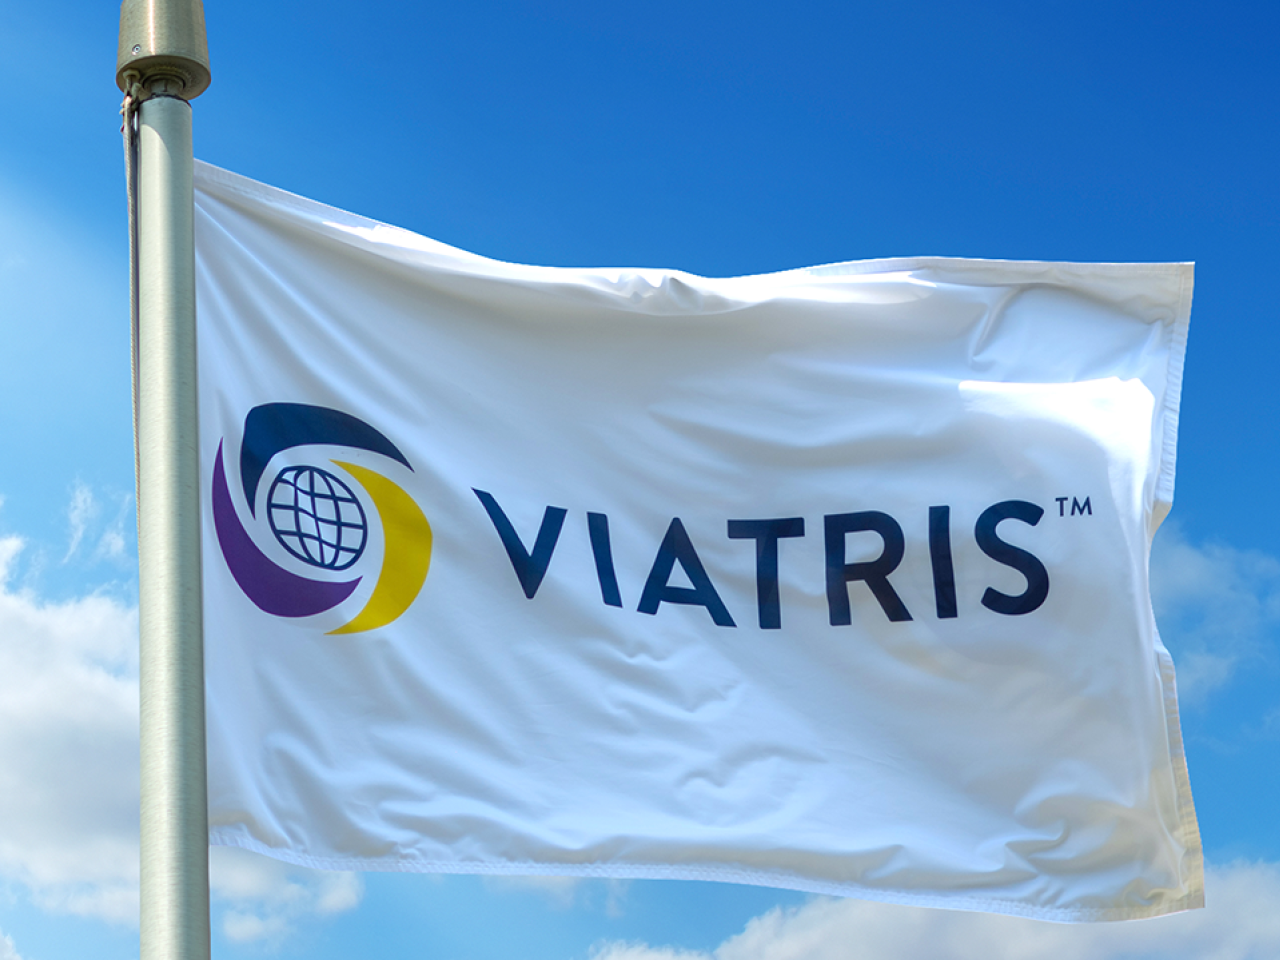 Viatris flag